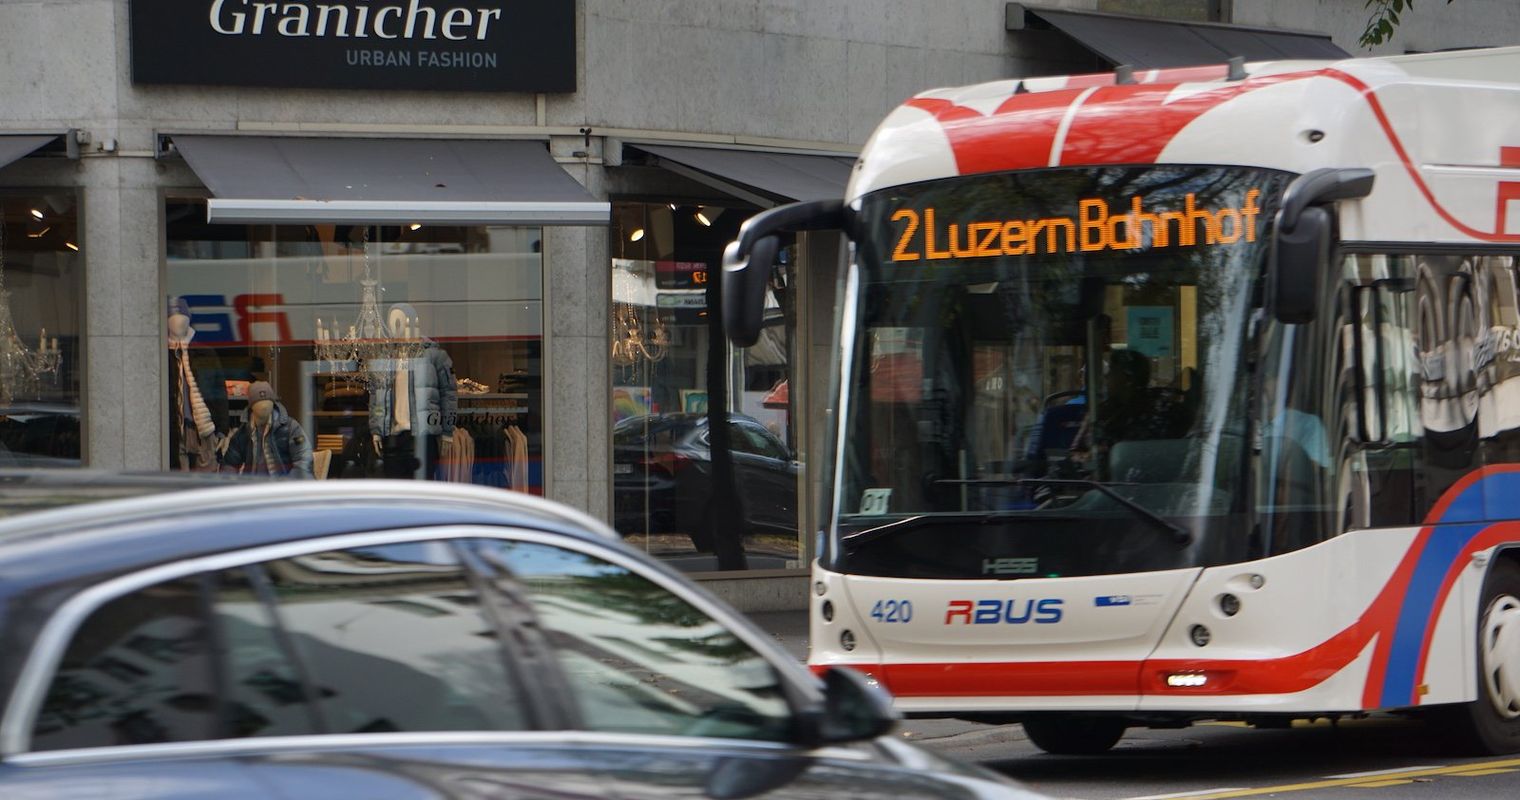 Der ÖV-Abbau in Luzern sorgt für harsche Kritik